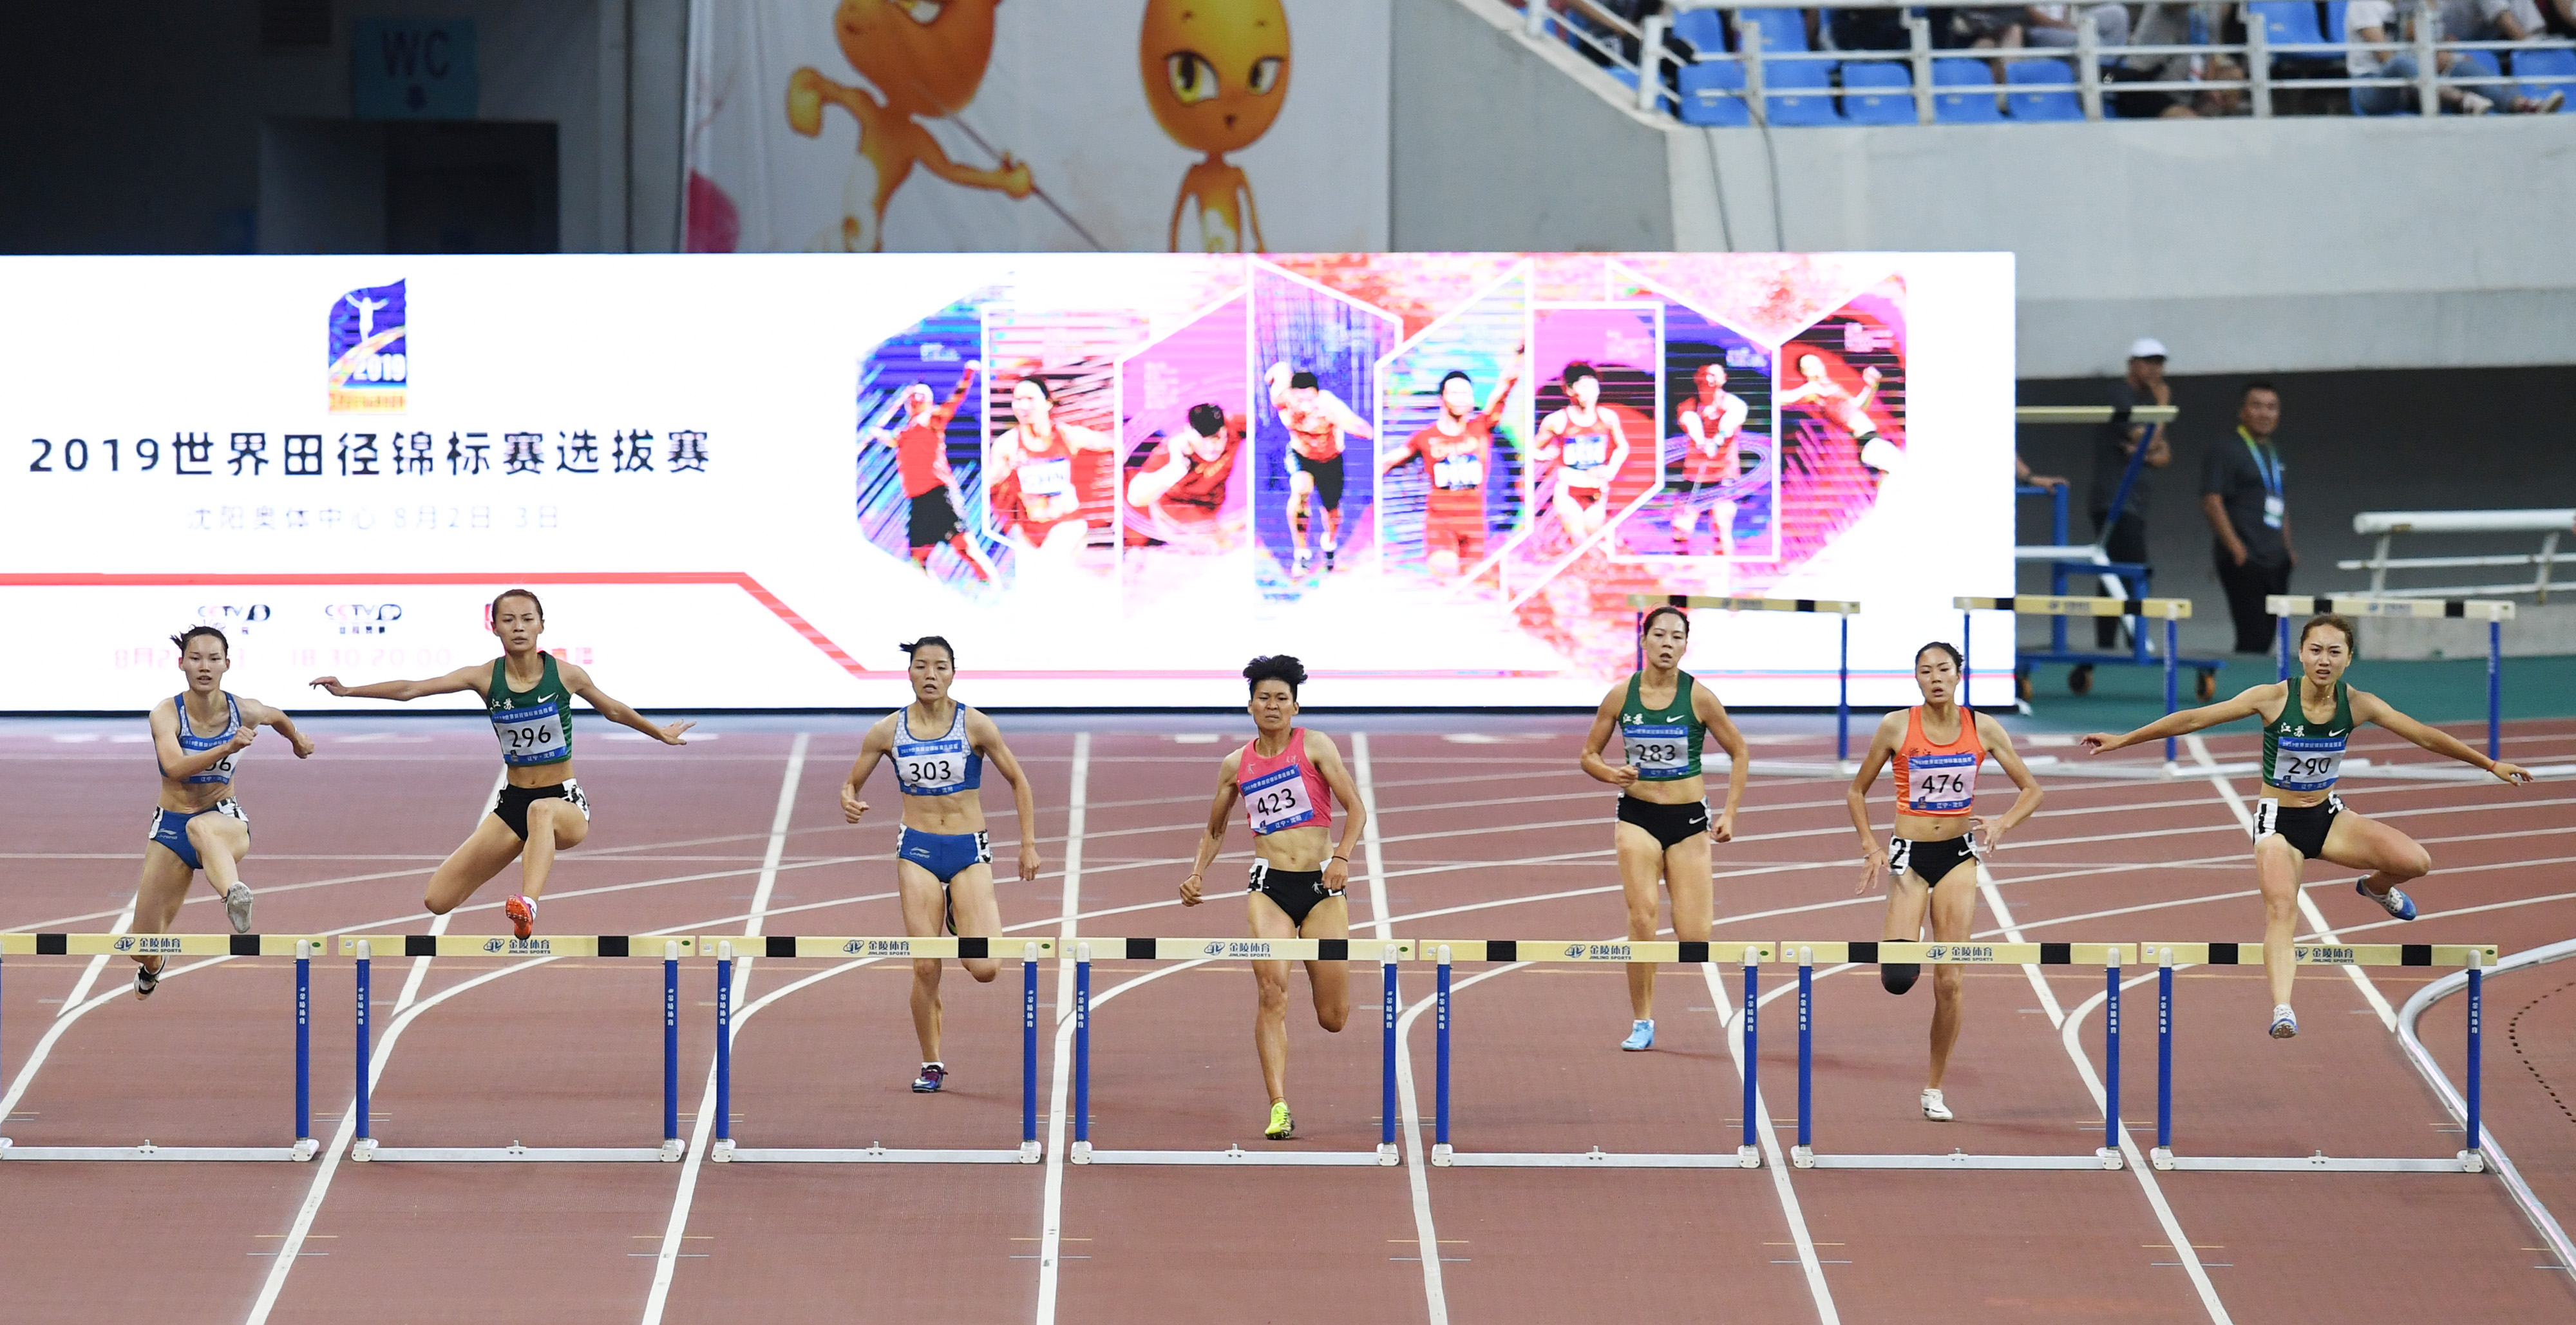 田径——世锦赛选拔赛:女子400米栏决赛赛况(2)